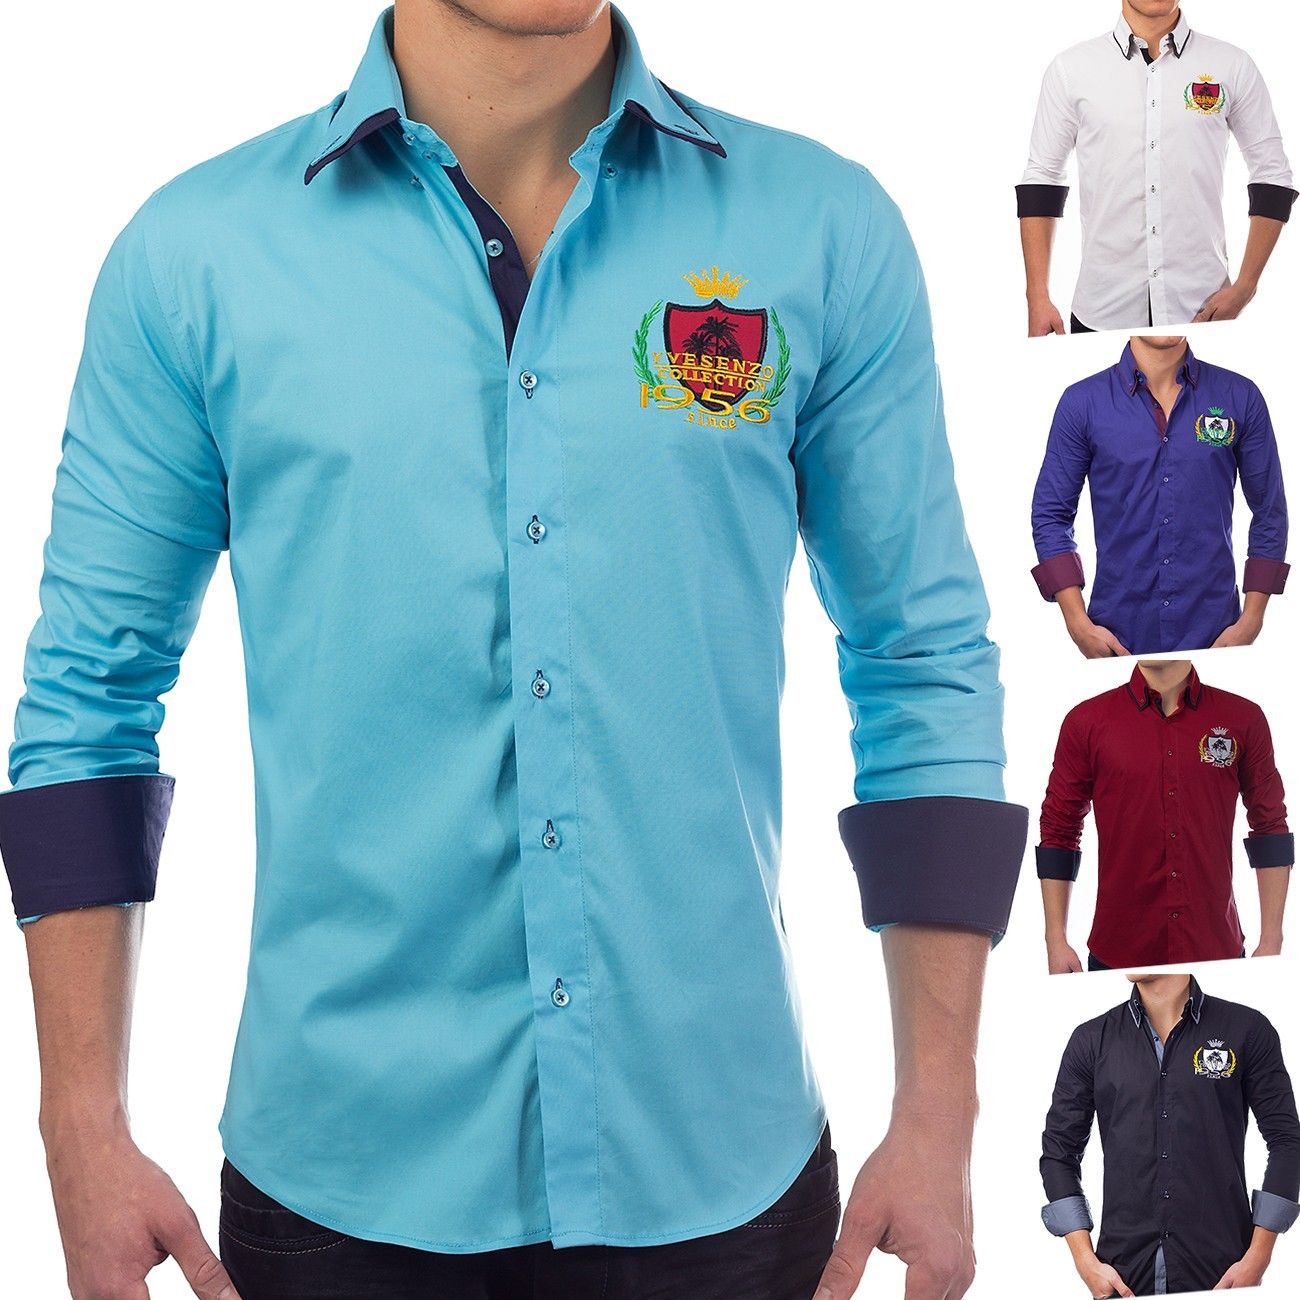 Herren Hemd langarm Poloshirt Slim Fit Patches Freizeithemd Casual (5 Farben)